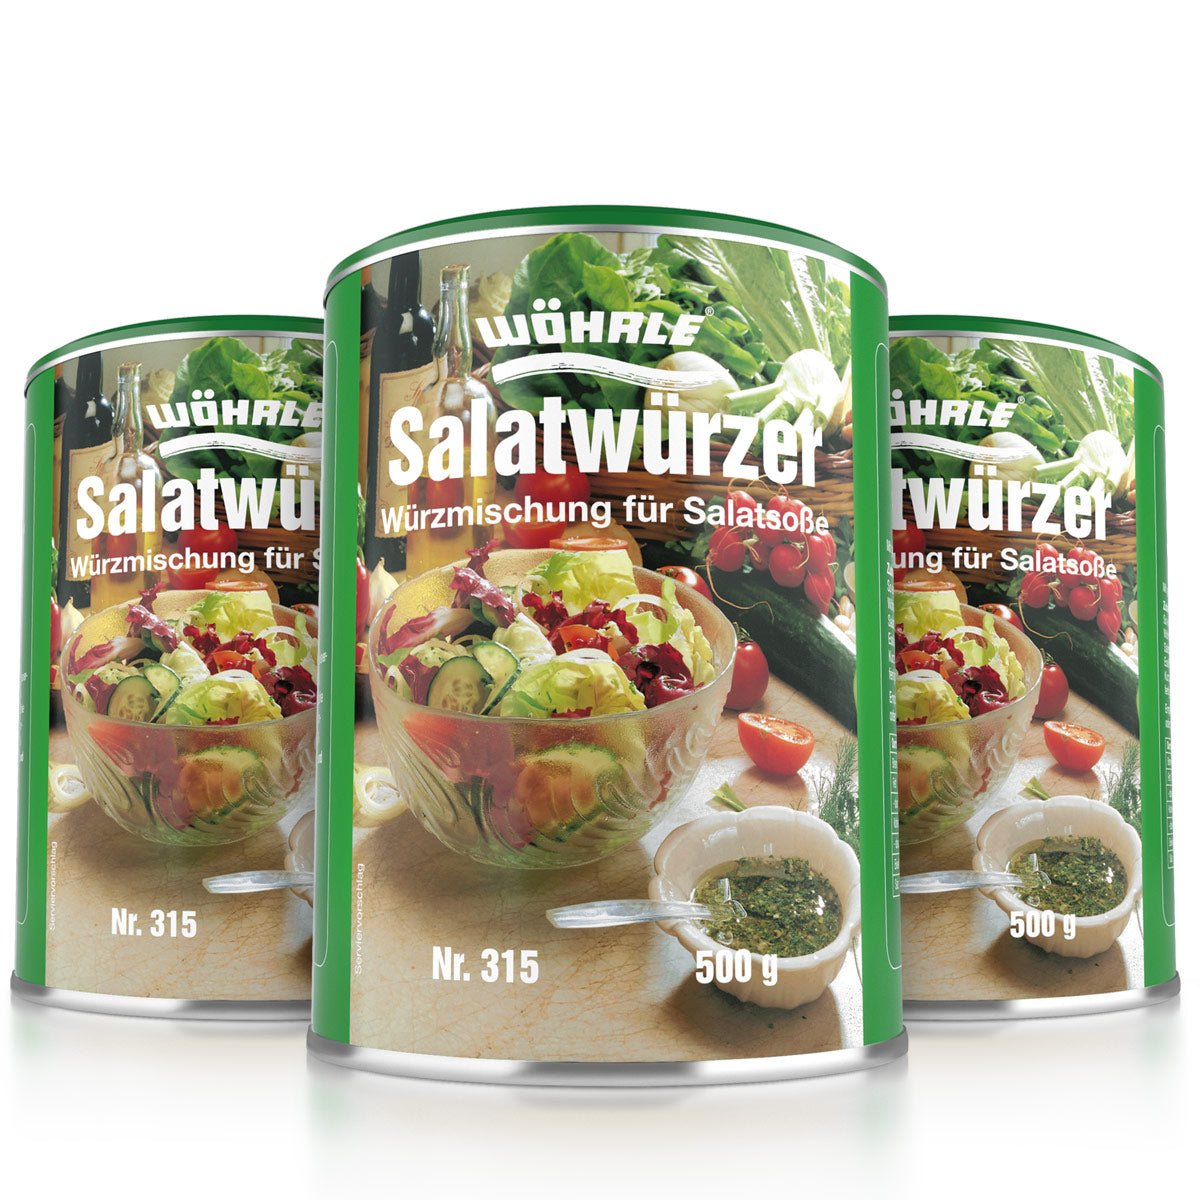 Salatwürzer - Wöhrle - S' Beschde für dahoim!